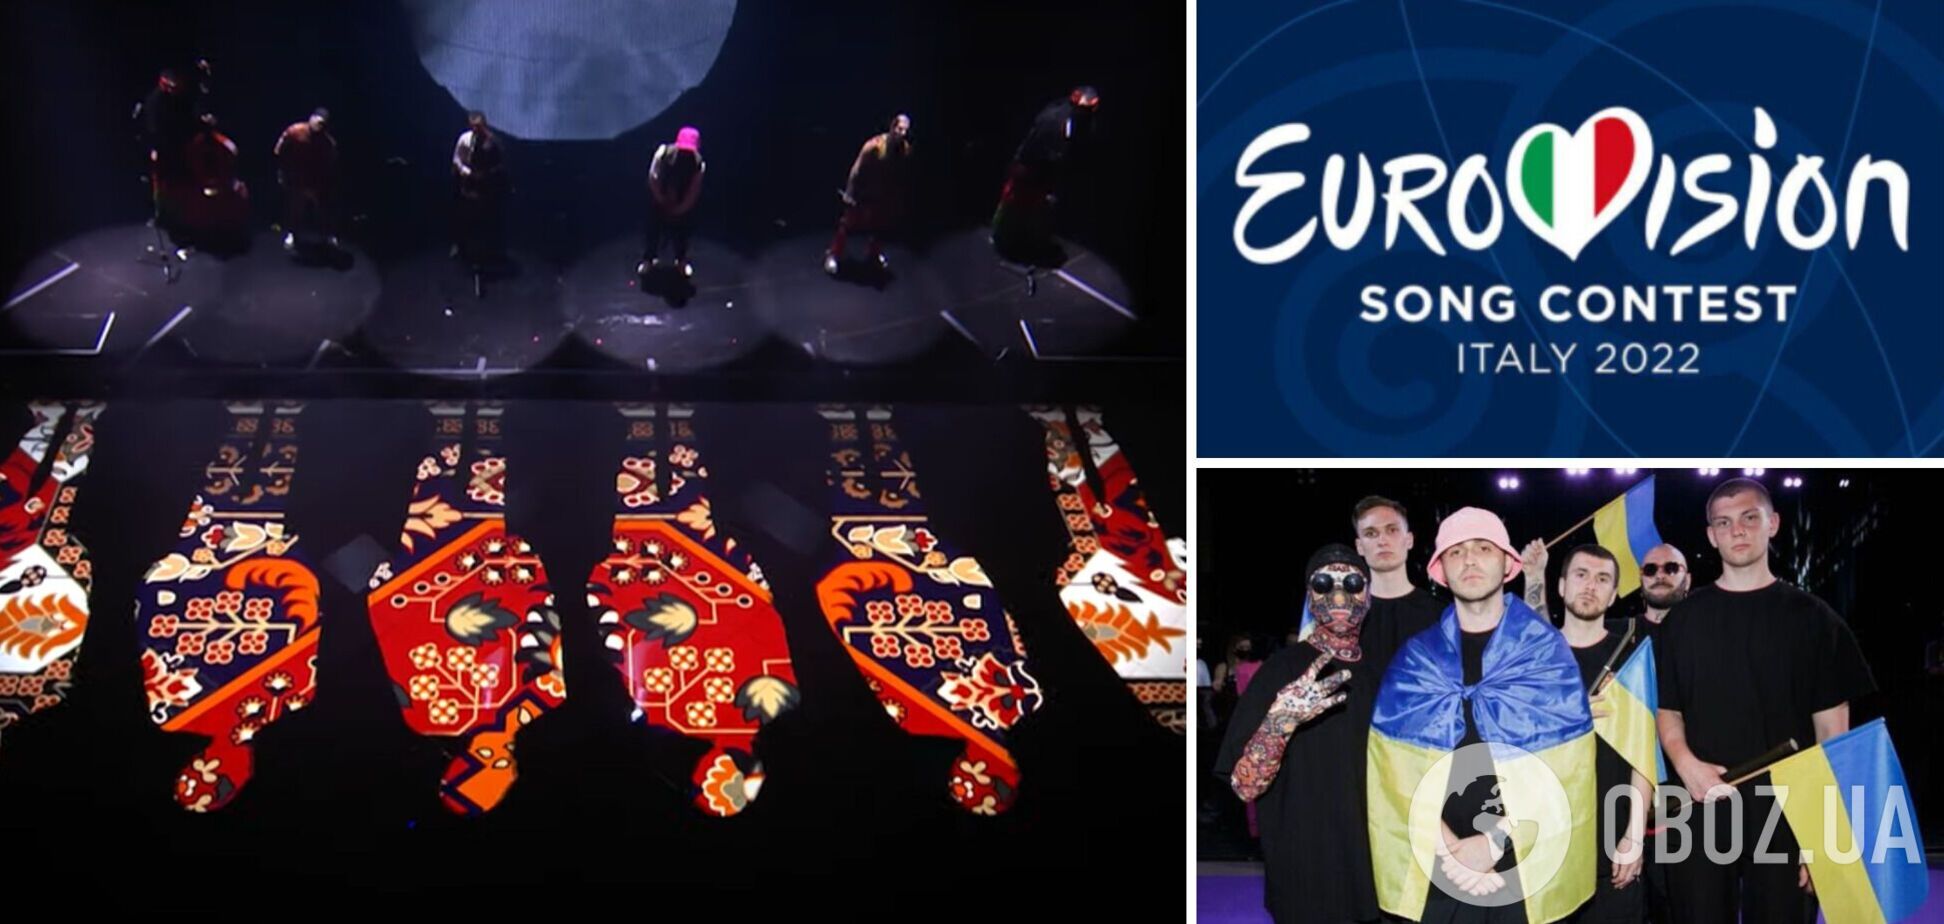 Ставки букмекеров на победу Украины на Евровидении выросли после второй репетиции Kalush Orchestrа. Видео